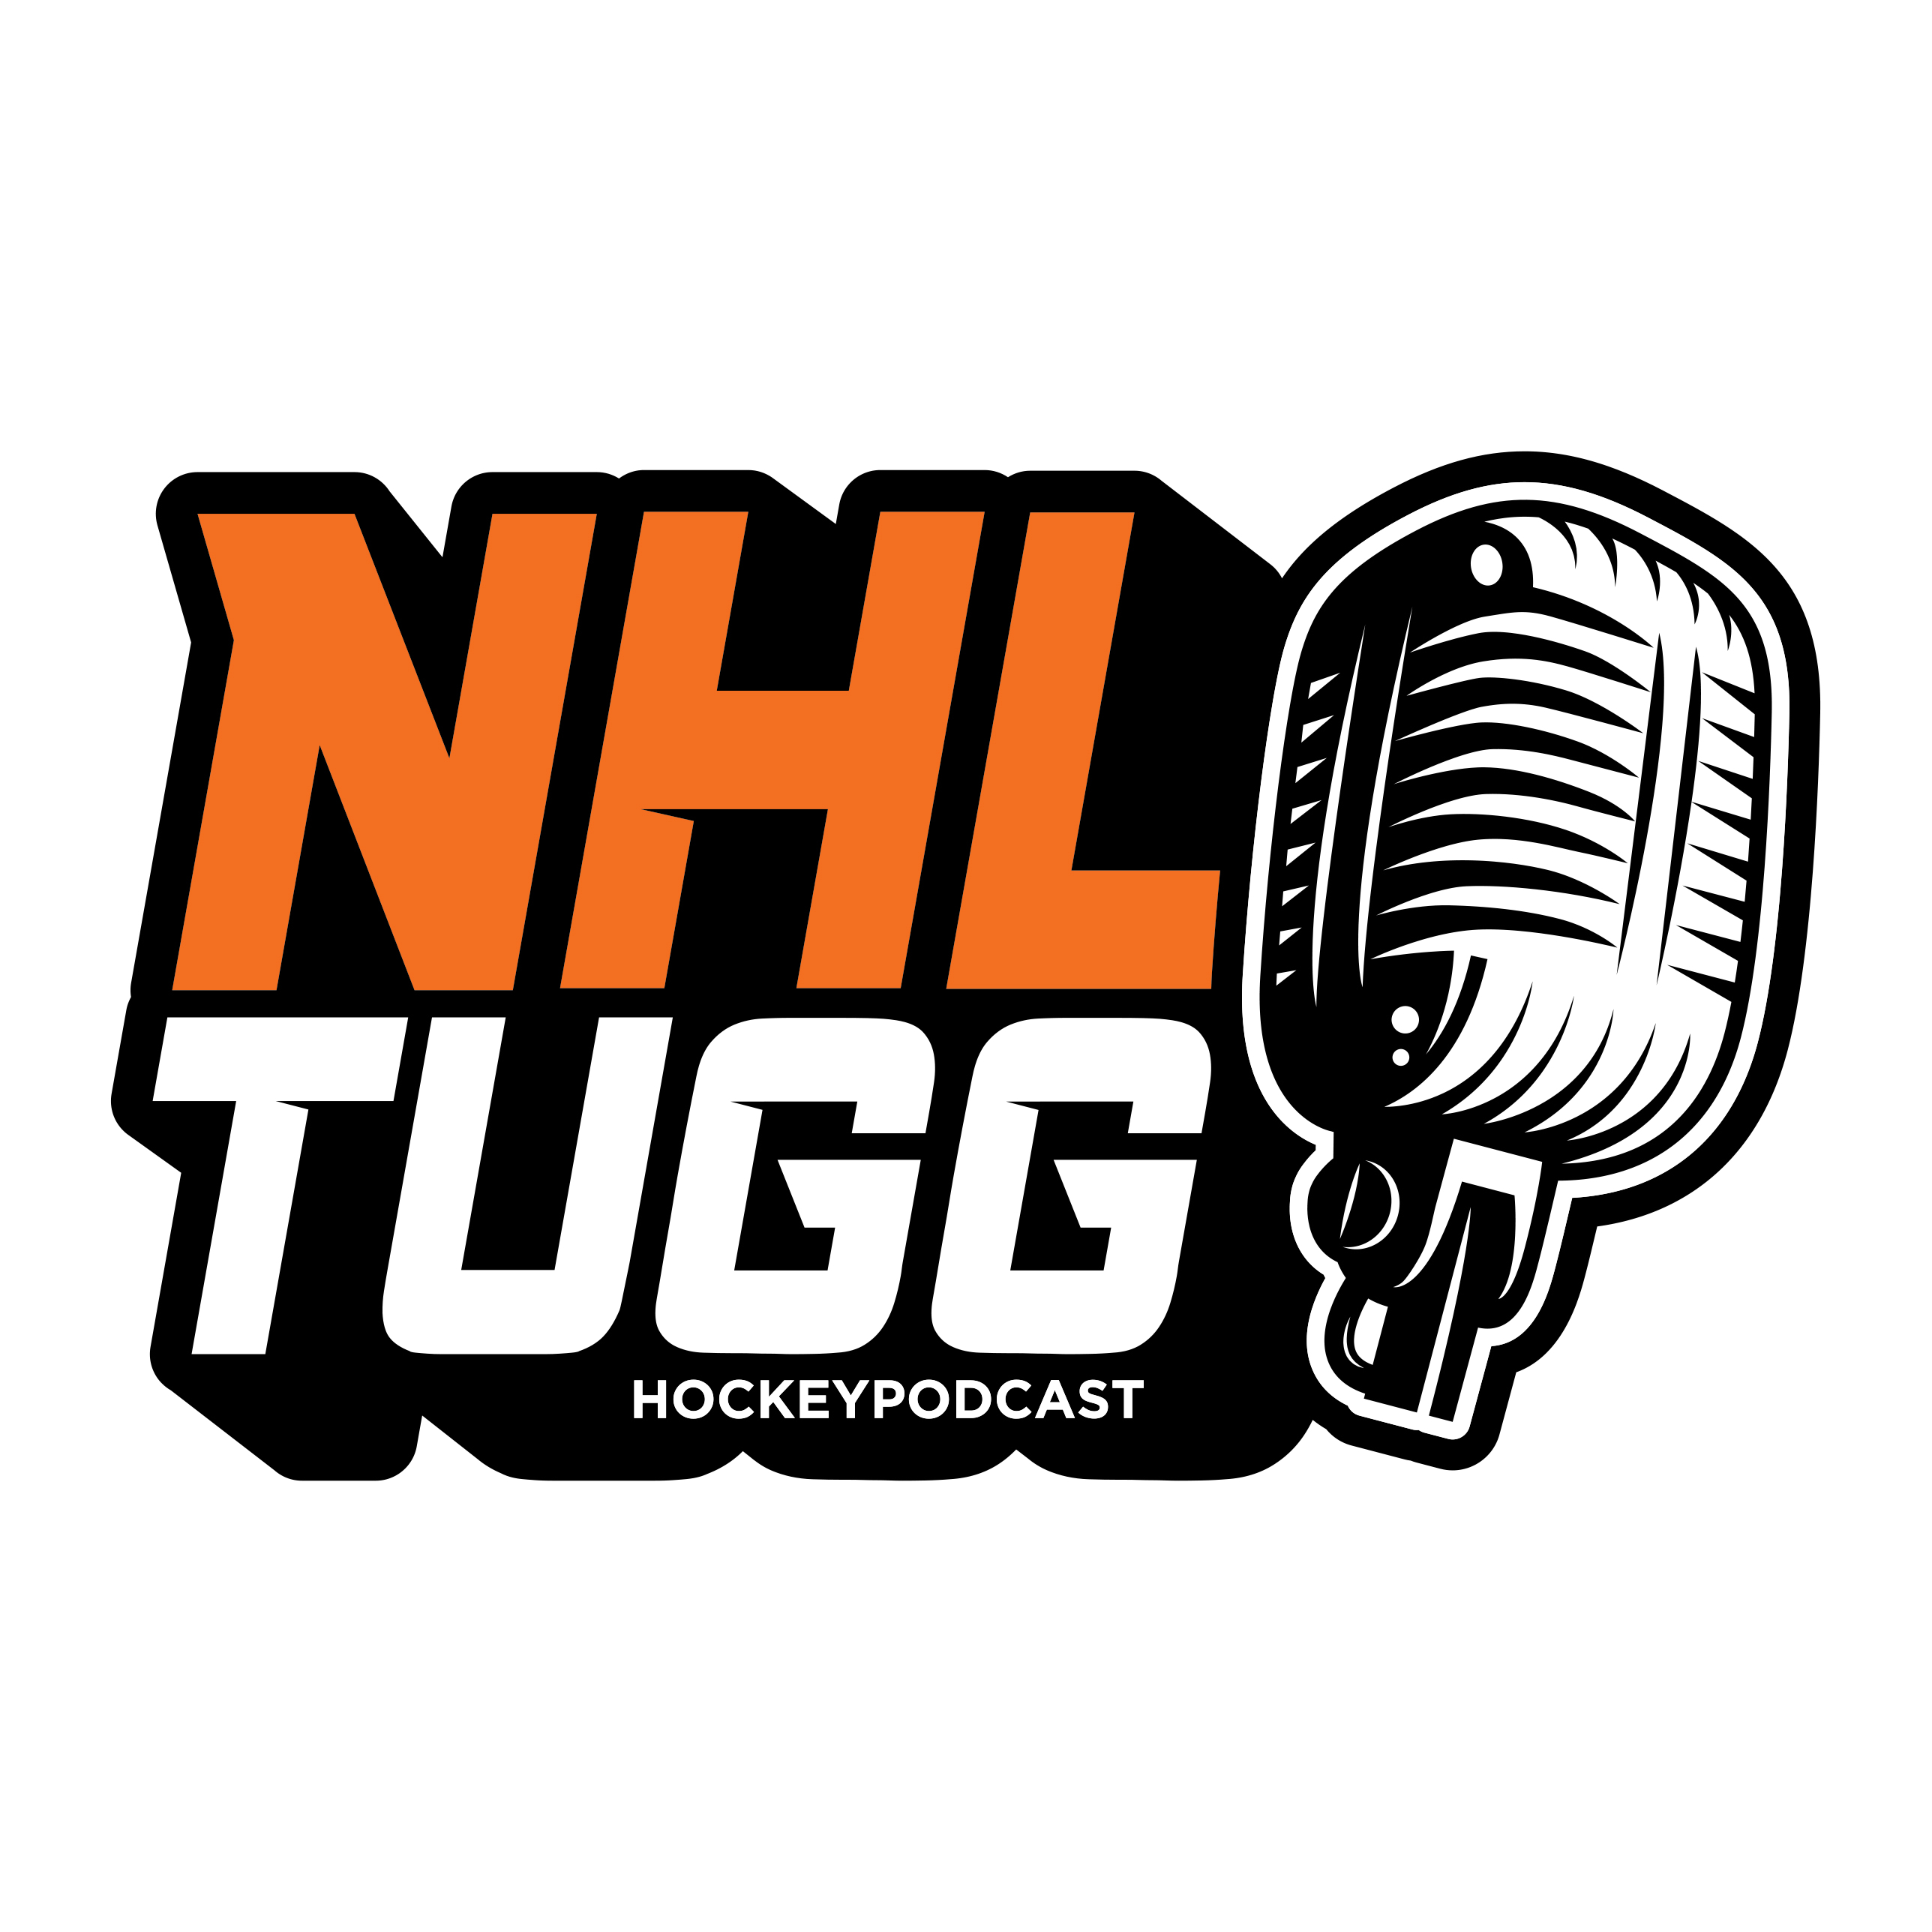 NHL-Tugg avsnitt 109 ”Det sitter i väggarna”